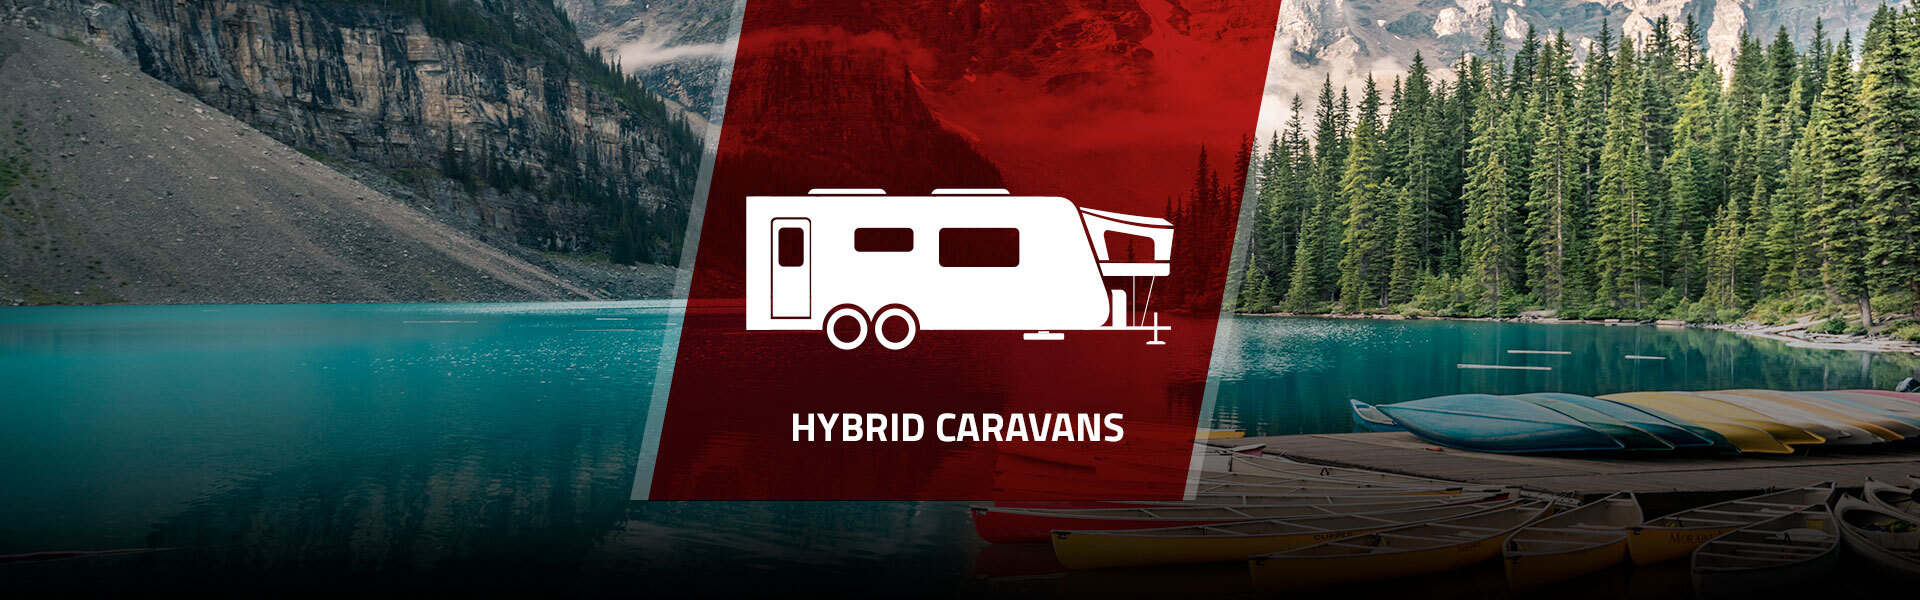 Caravanes hybrides chez P.M. Caravanes